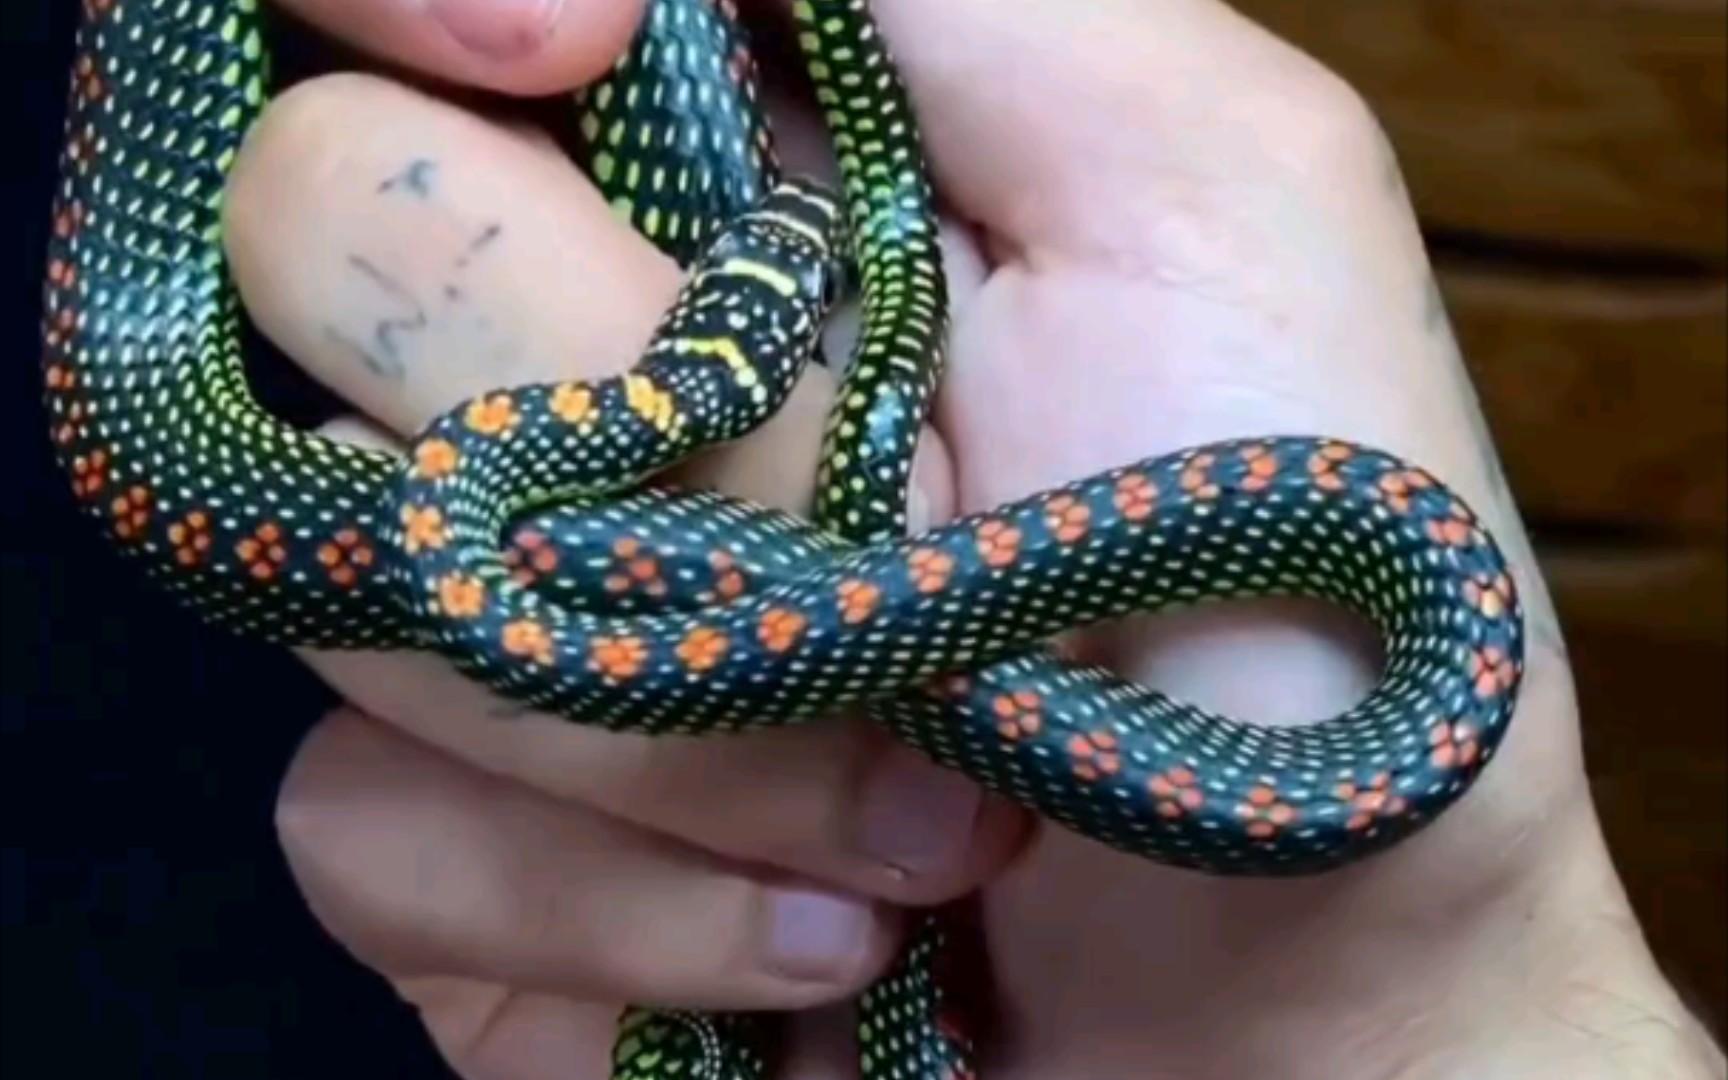 色彩斑斓的蛇图片